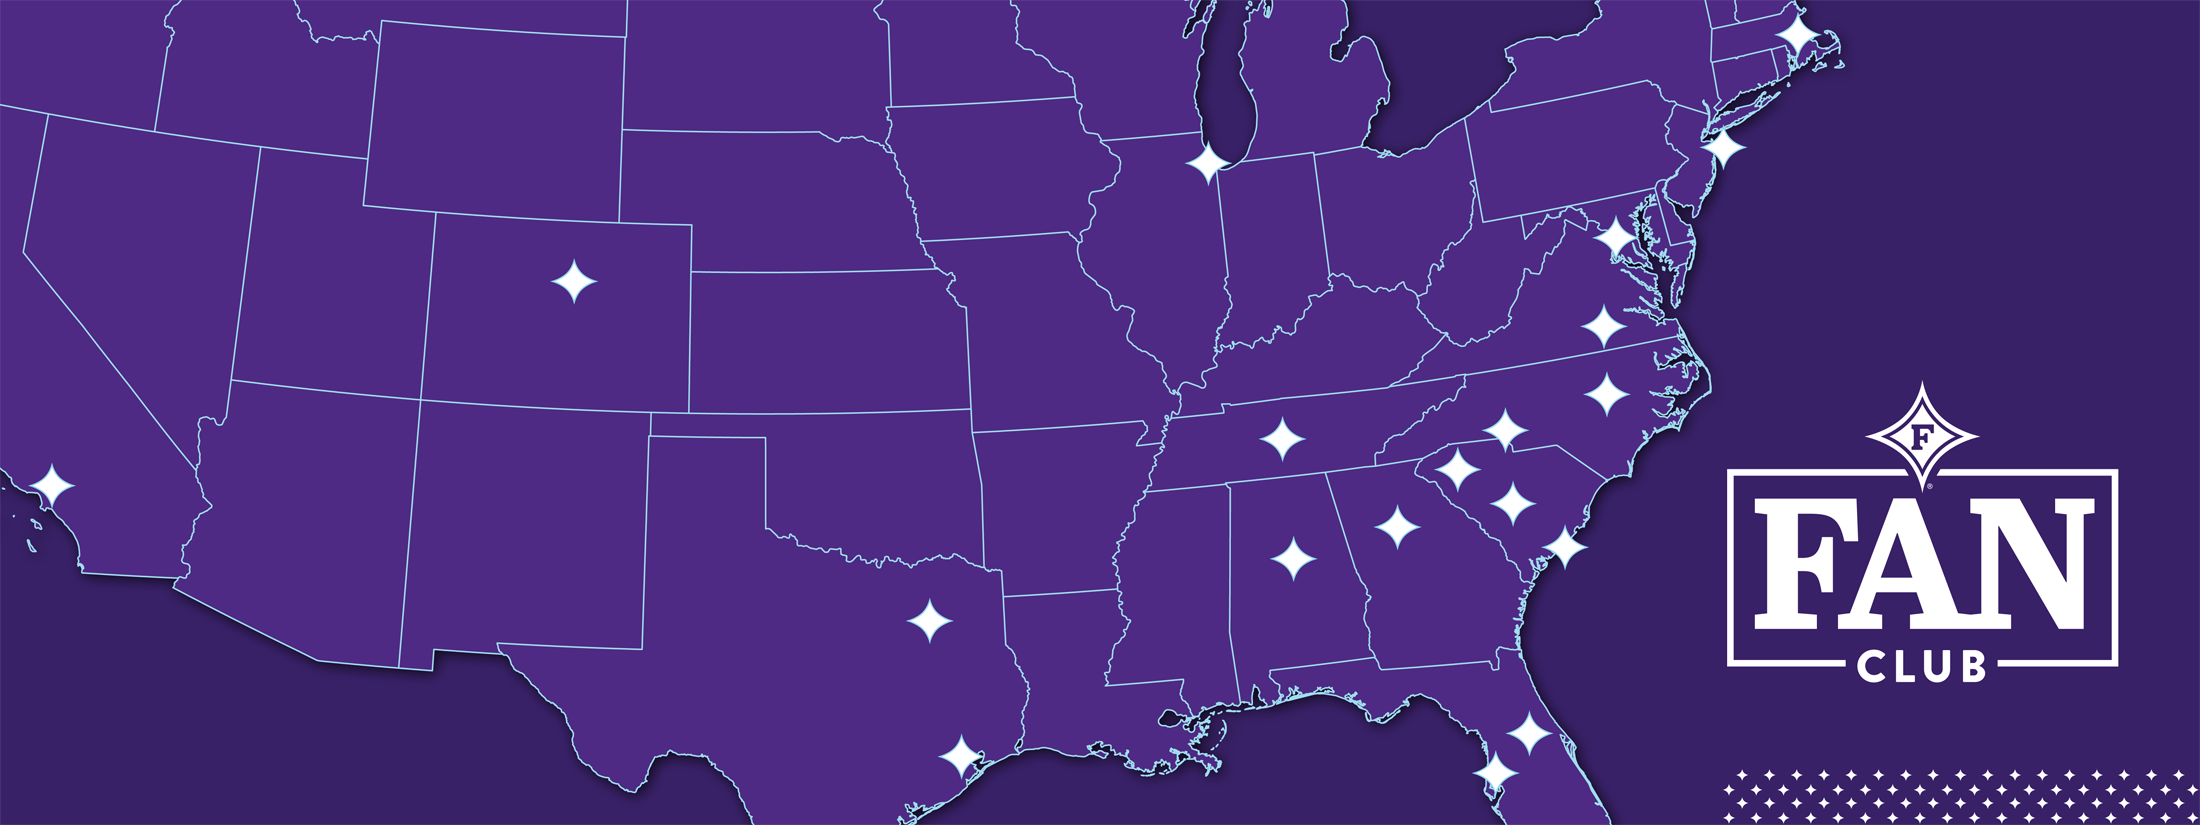 Fan Club cities on map